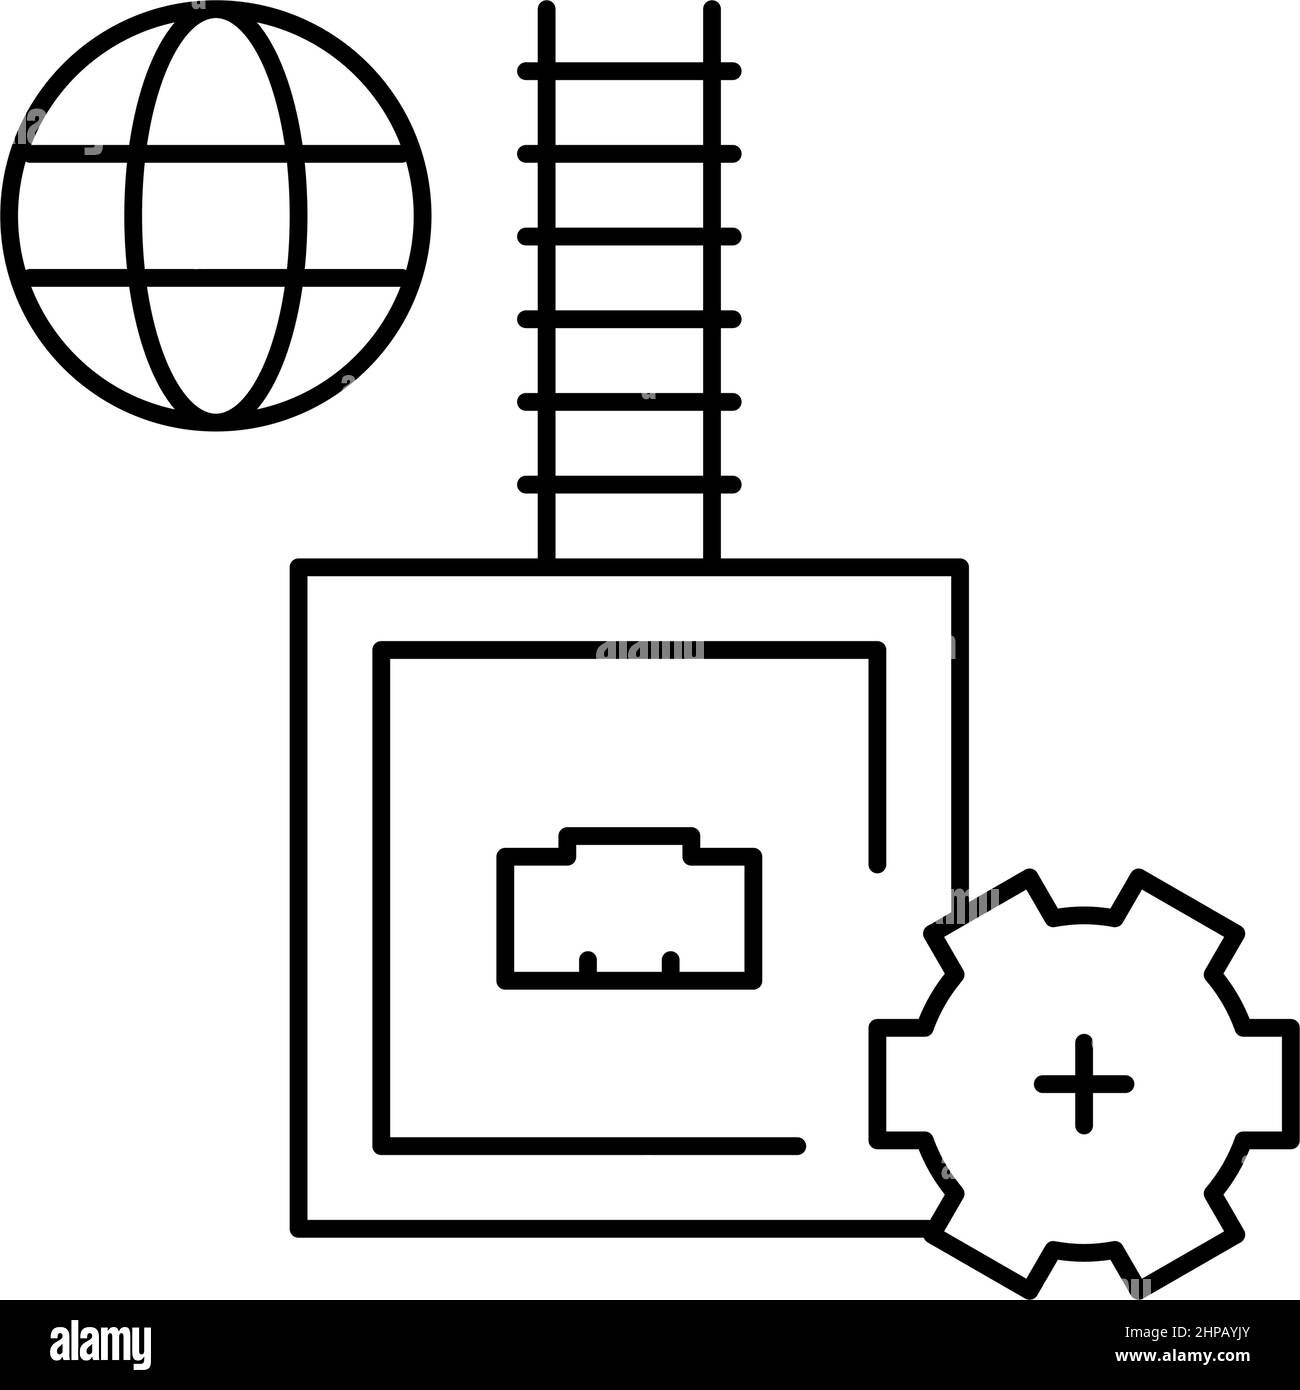 immagine vettoriale dell'icona della linea dei fusibili elettrici Illustrazione Vettoriale